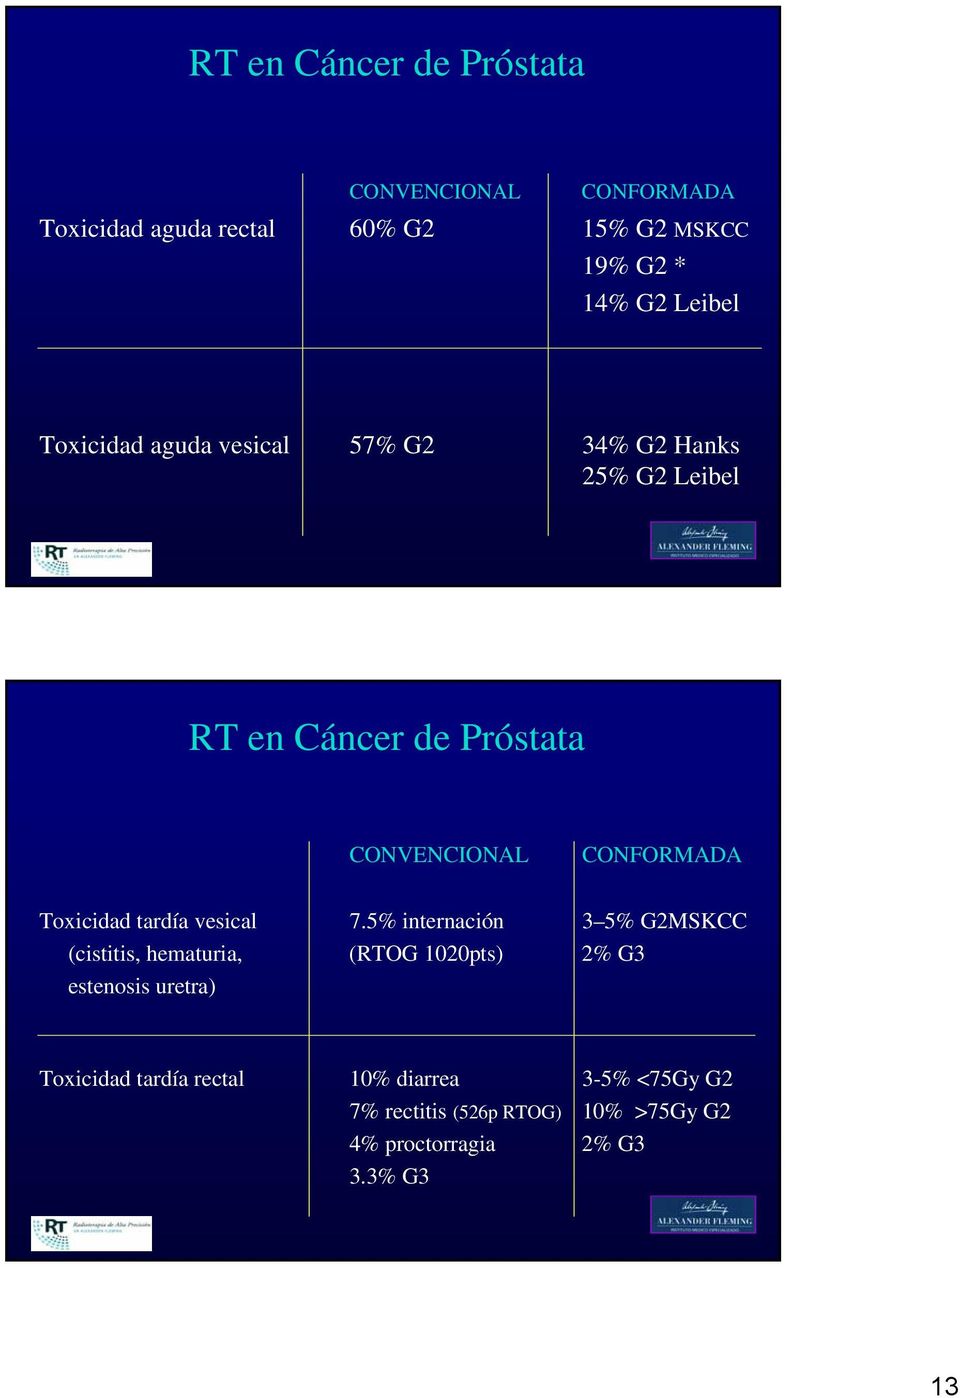 5% internación 3 5% G2MSKCC (cistitis, hematuria, (RTOG 1020pts) 2% G3 estenosis uretra) Toxicidad